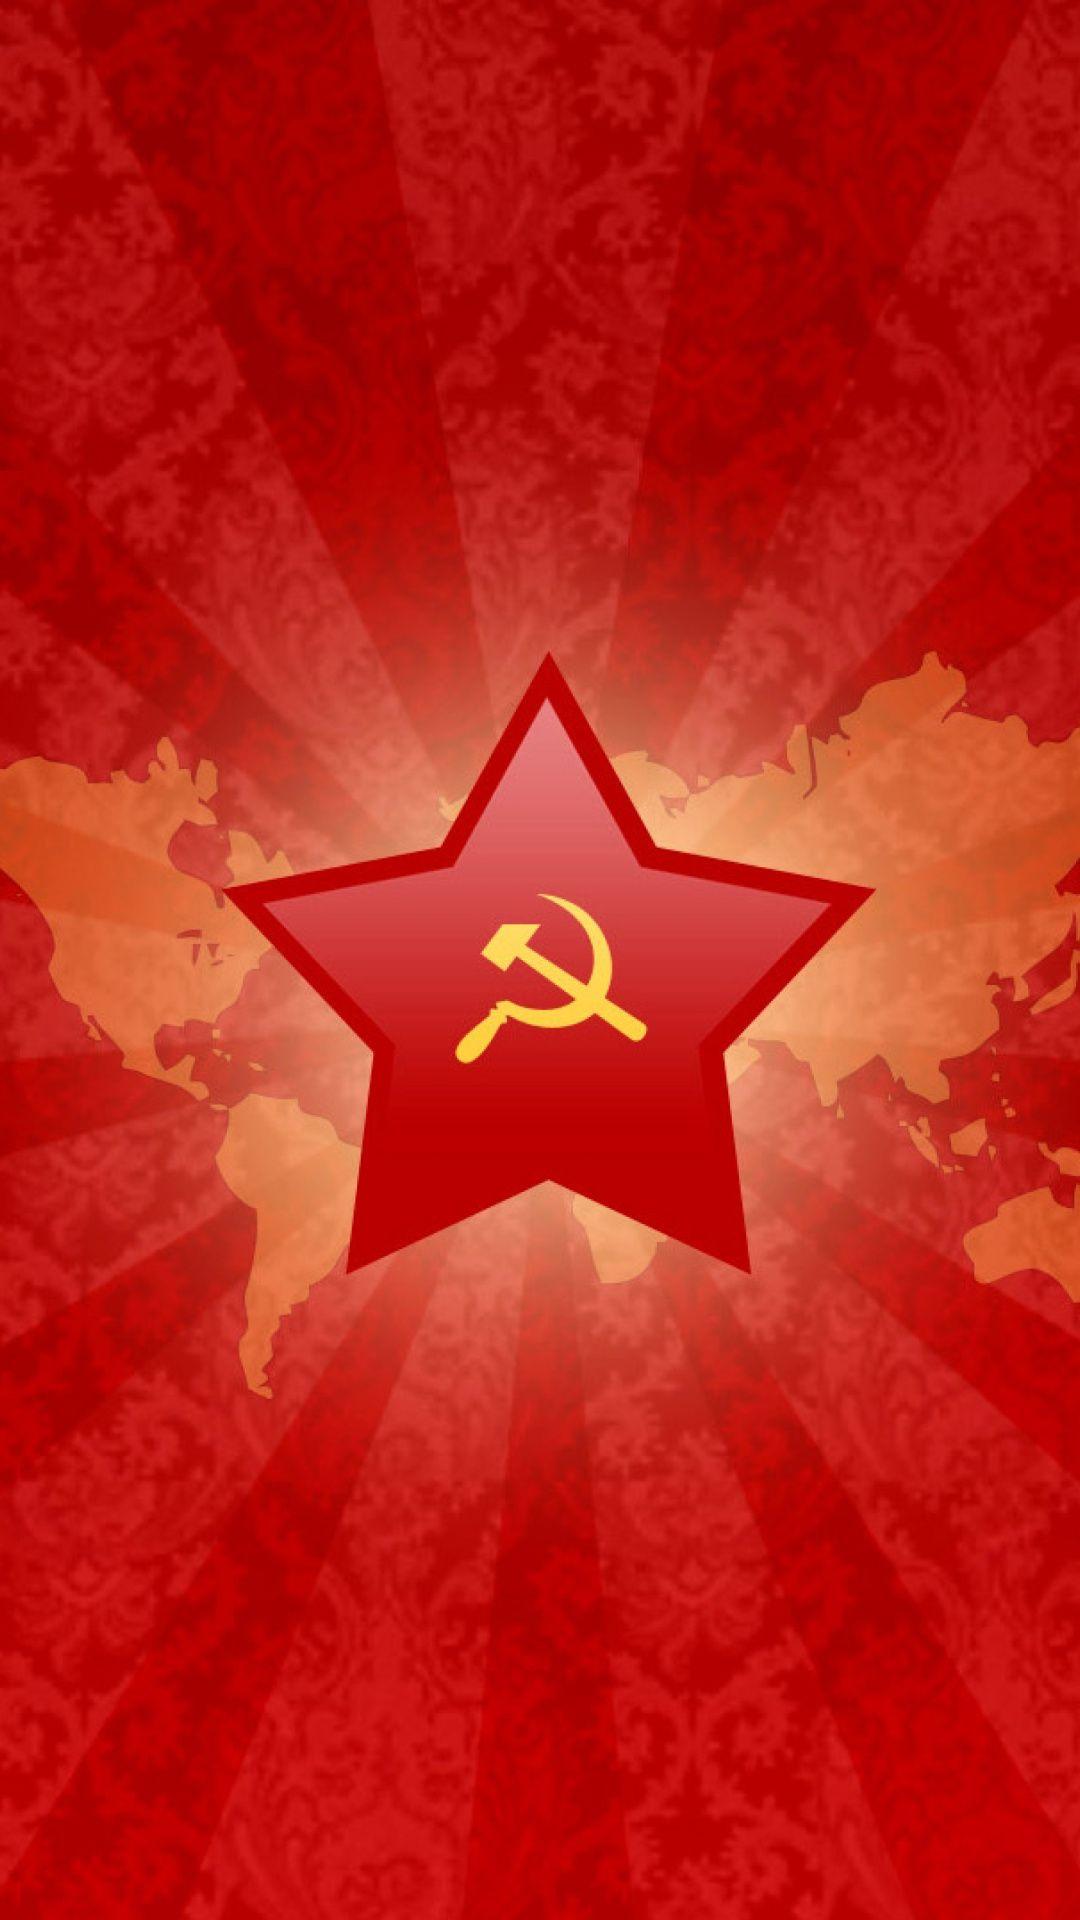 Soviet Flag Wallpaper, Russian Flag Wallpaper